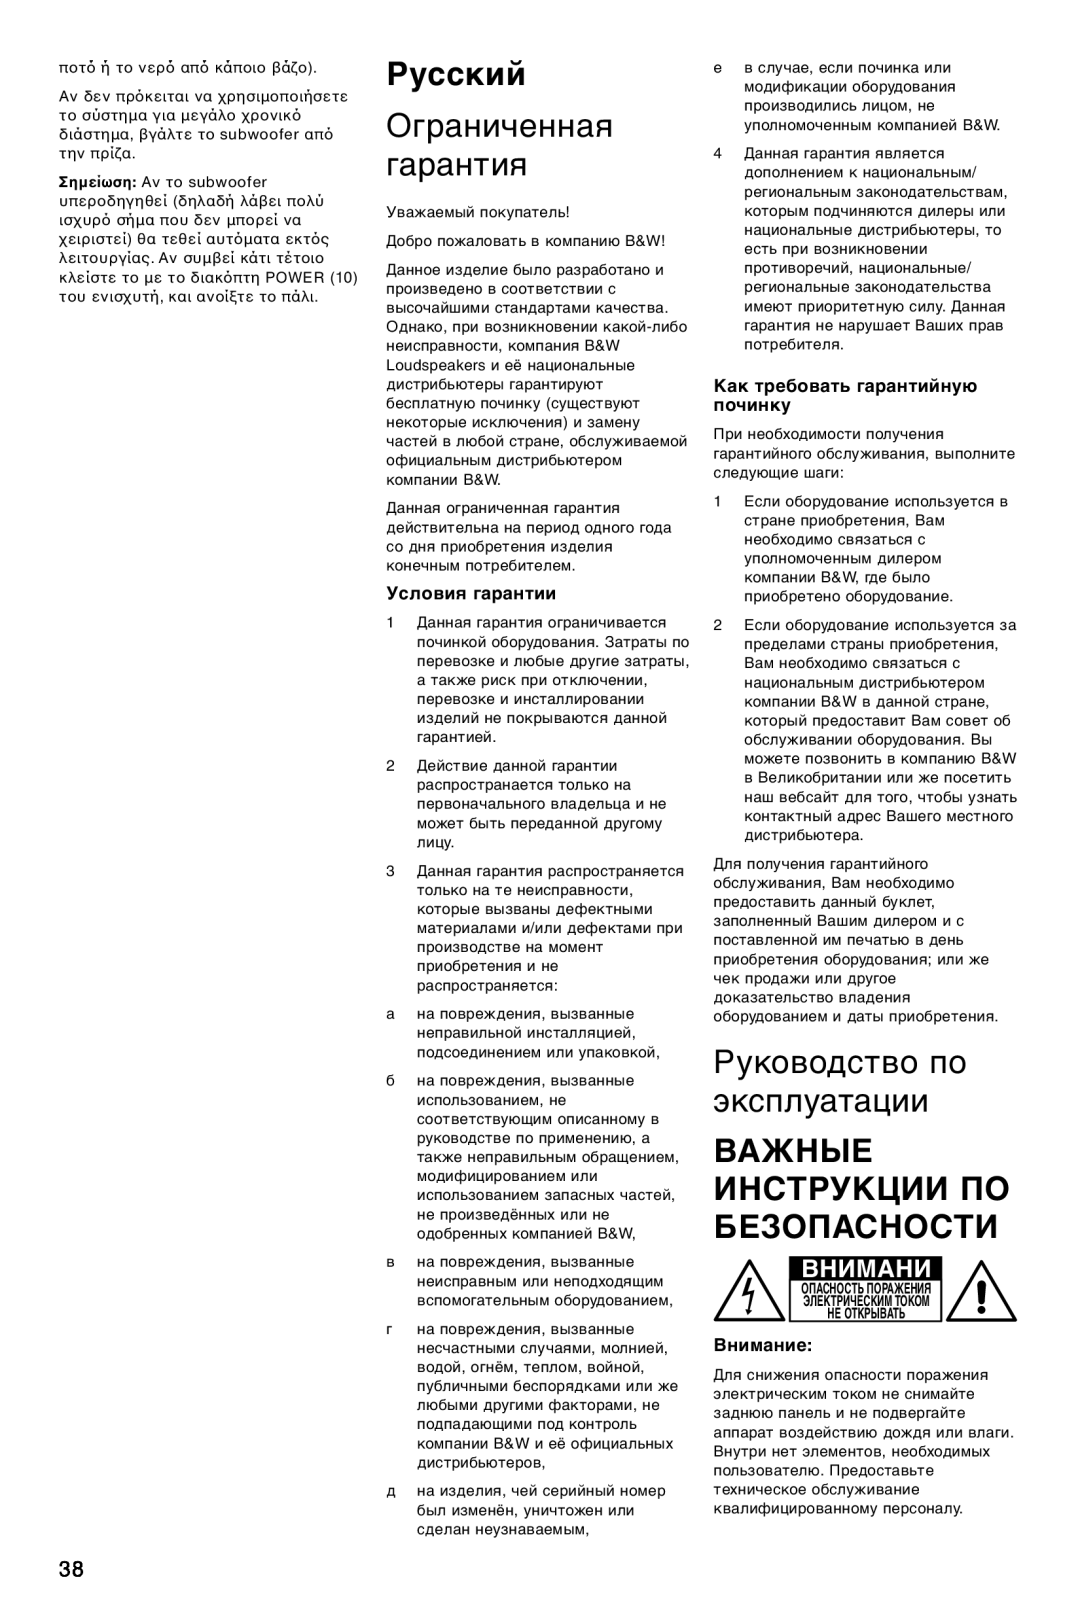 Bowers & Wilkins ASW800 Русский, Ограниченная гарантия, Руководство по эксплуатации, Важные Инструкции По Безопасности 